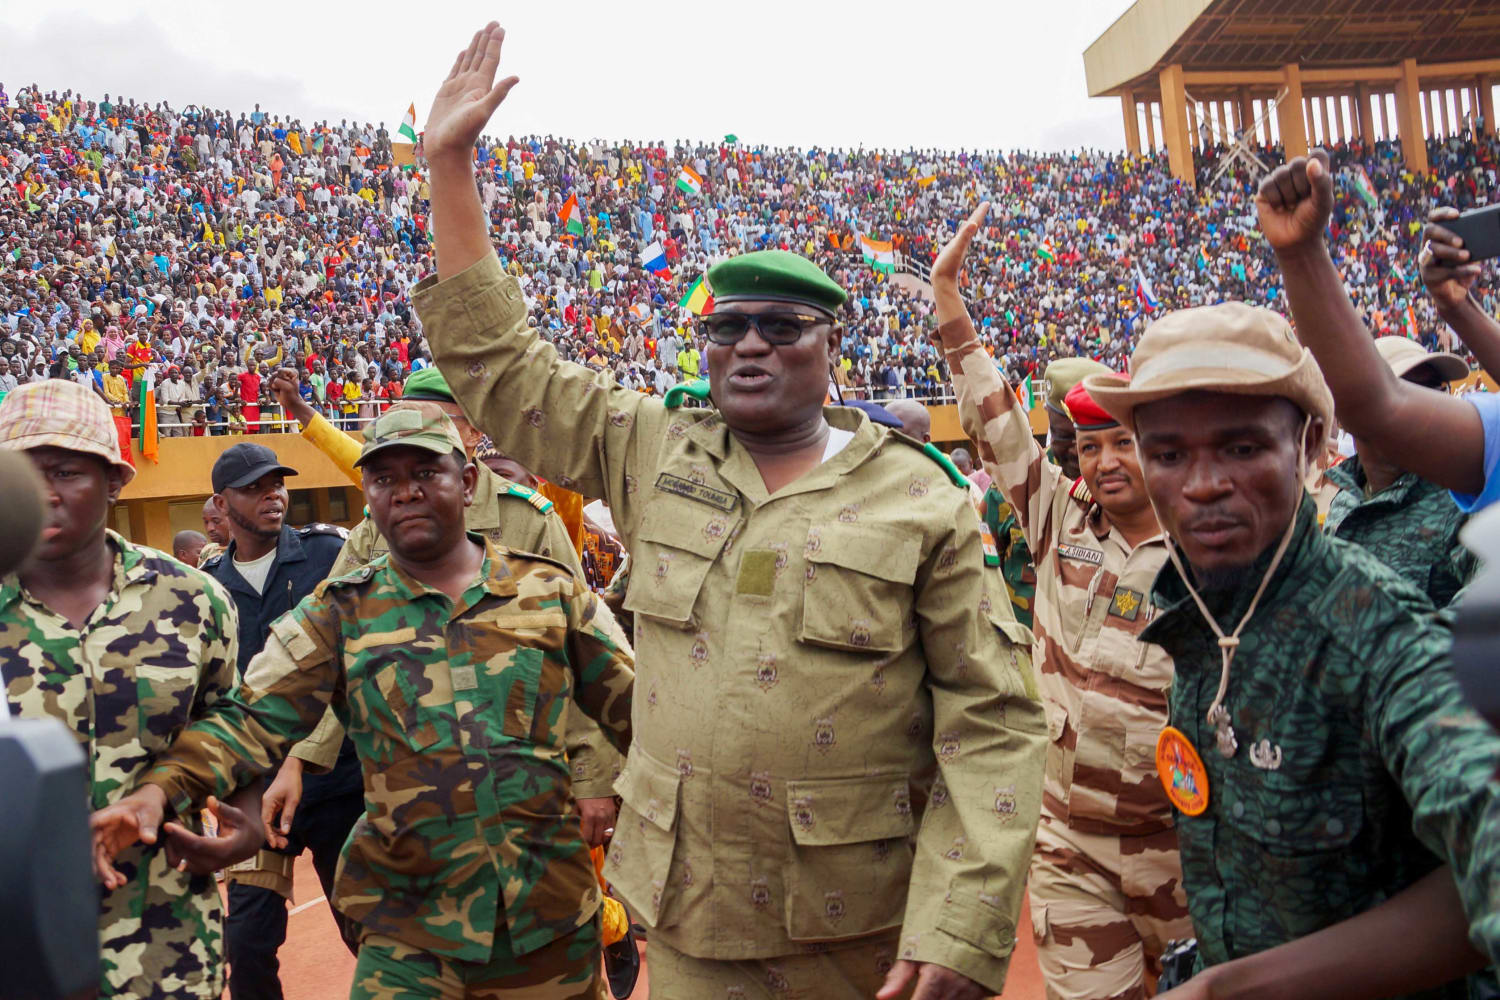 Coup leaders in Niger grow increasingly defiant, U.S. officials losing hope